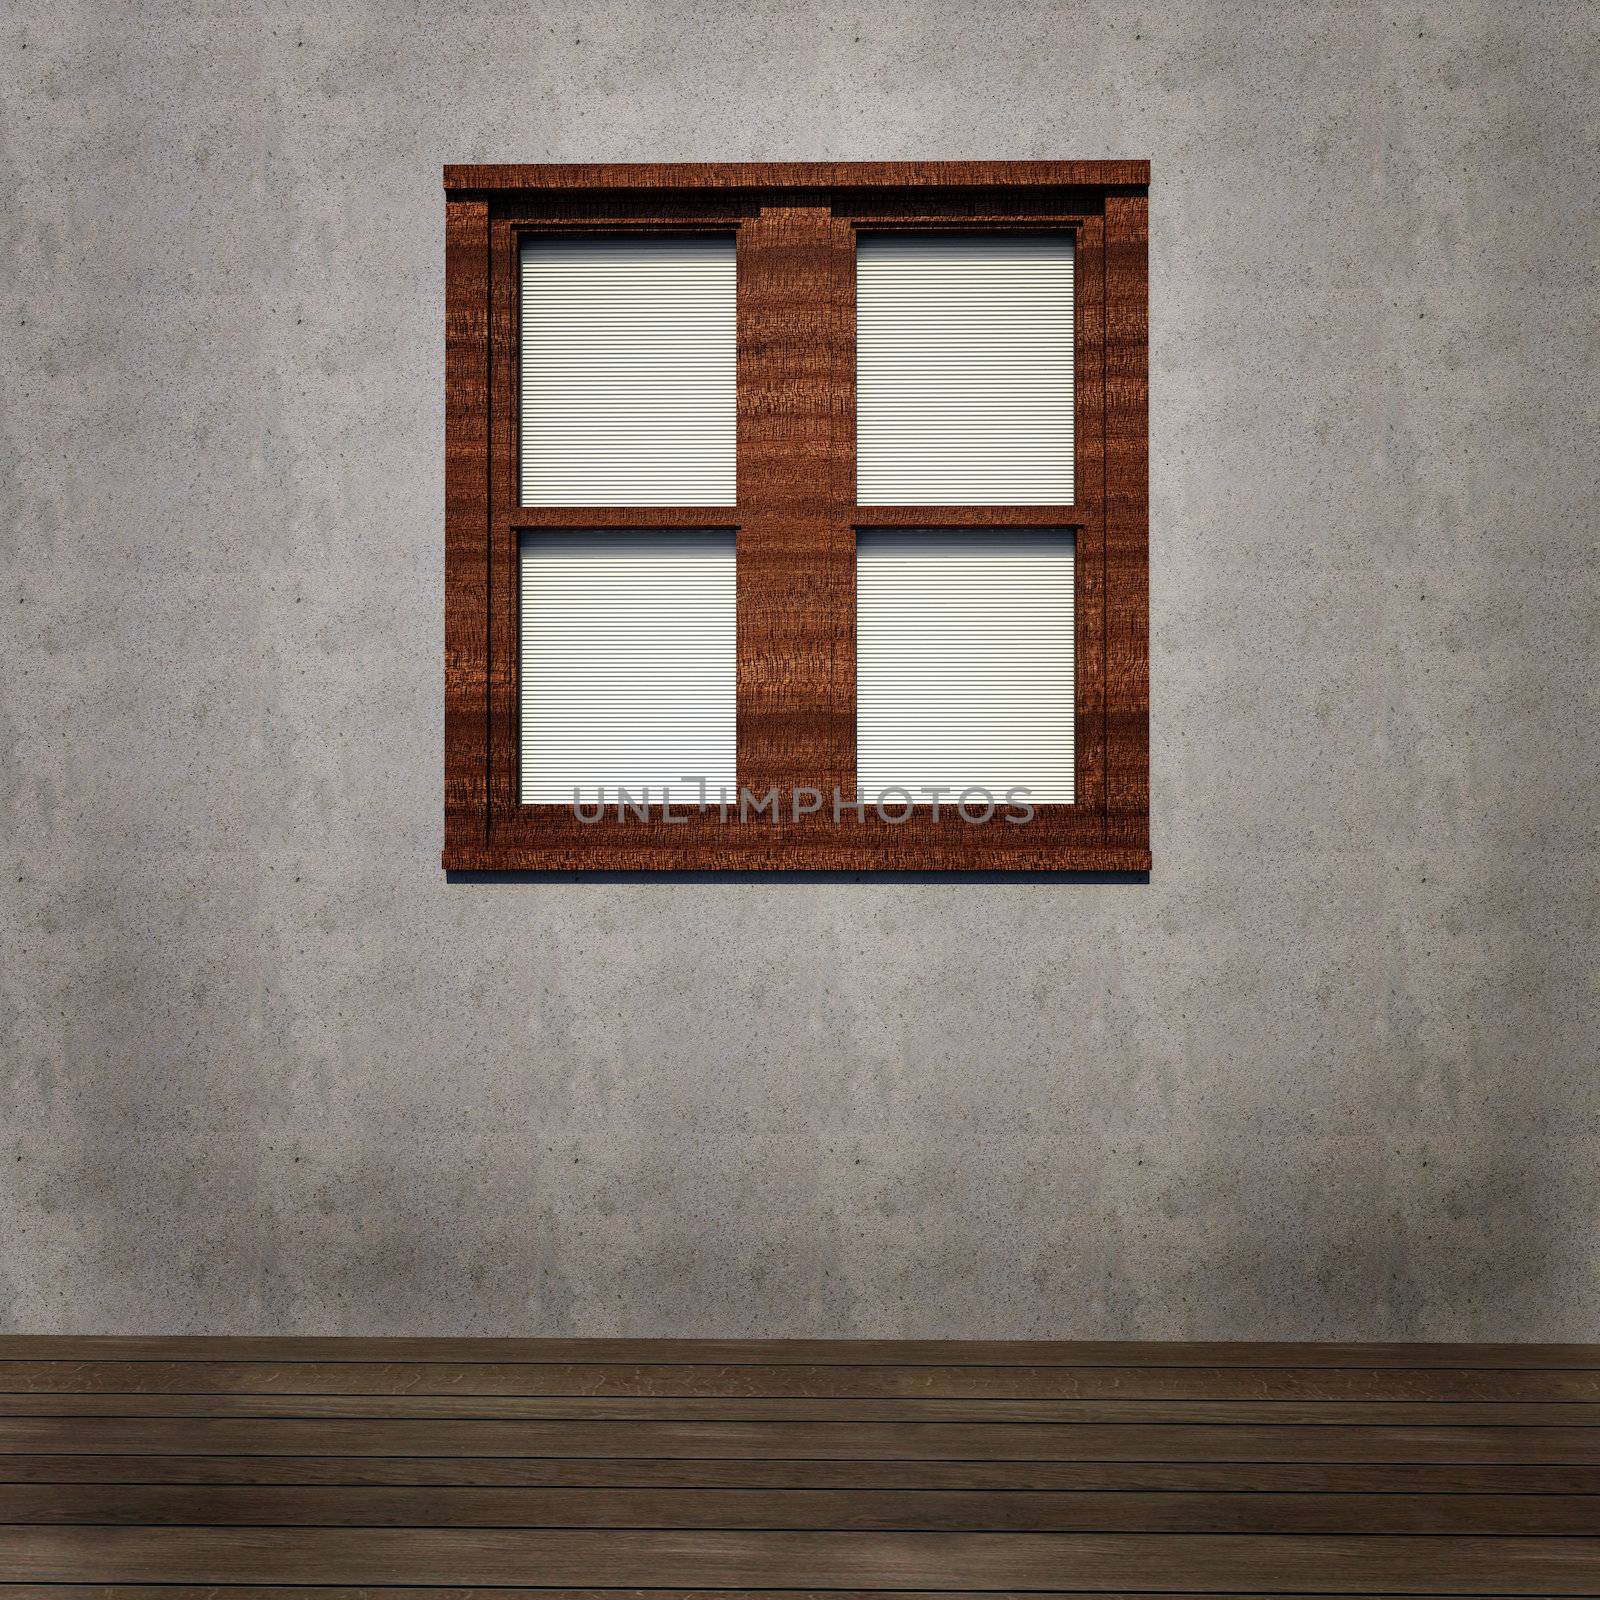 Grunge interior background with window